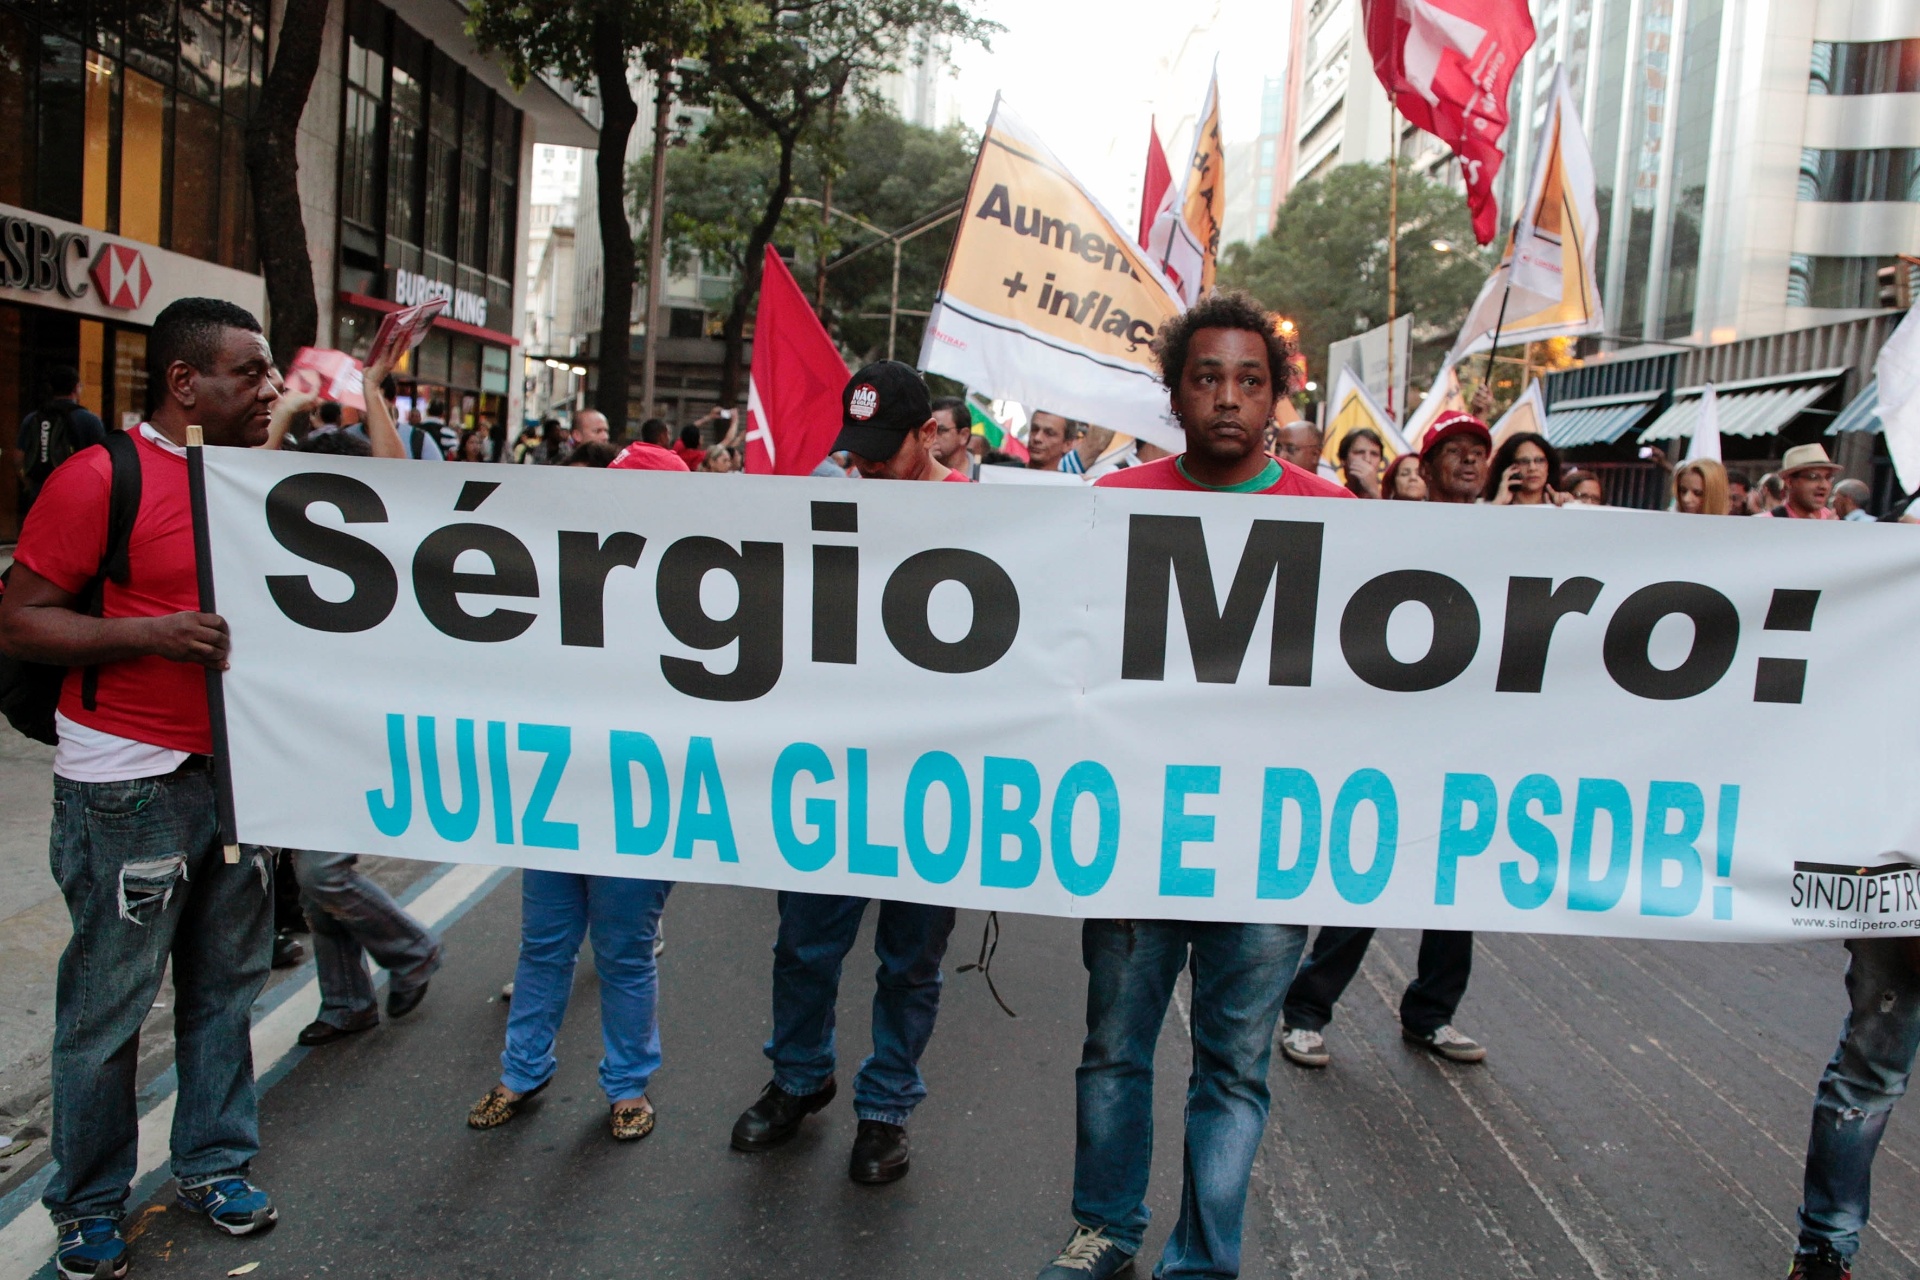 Resultado de imagem para sergio Moro juiz da globo e do PSDB